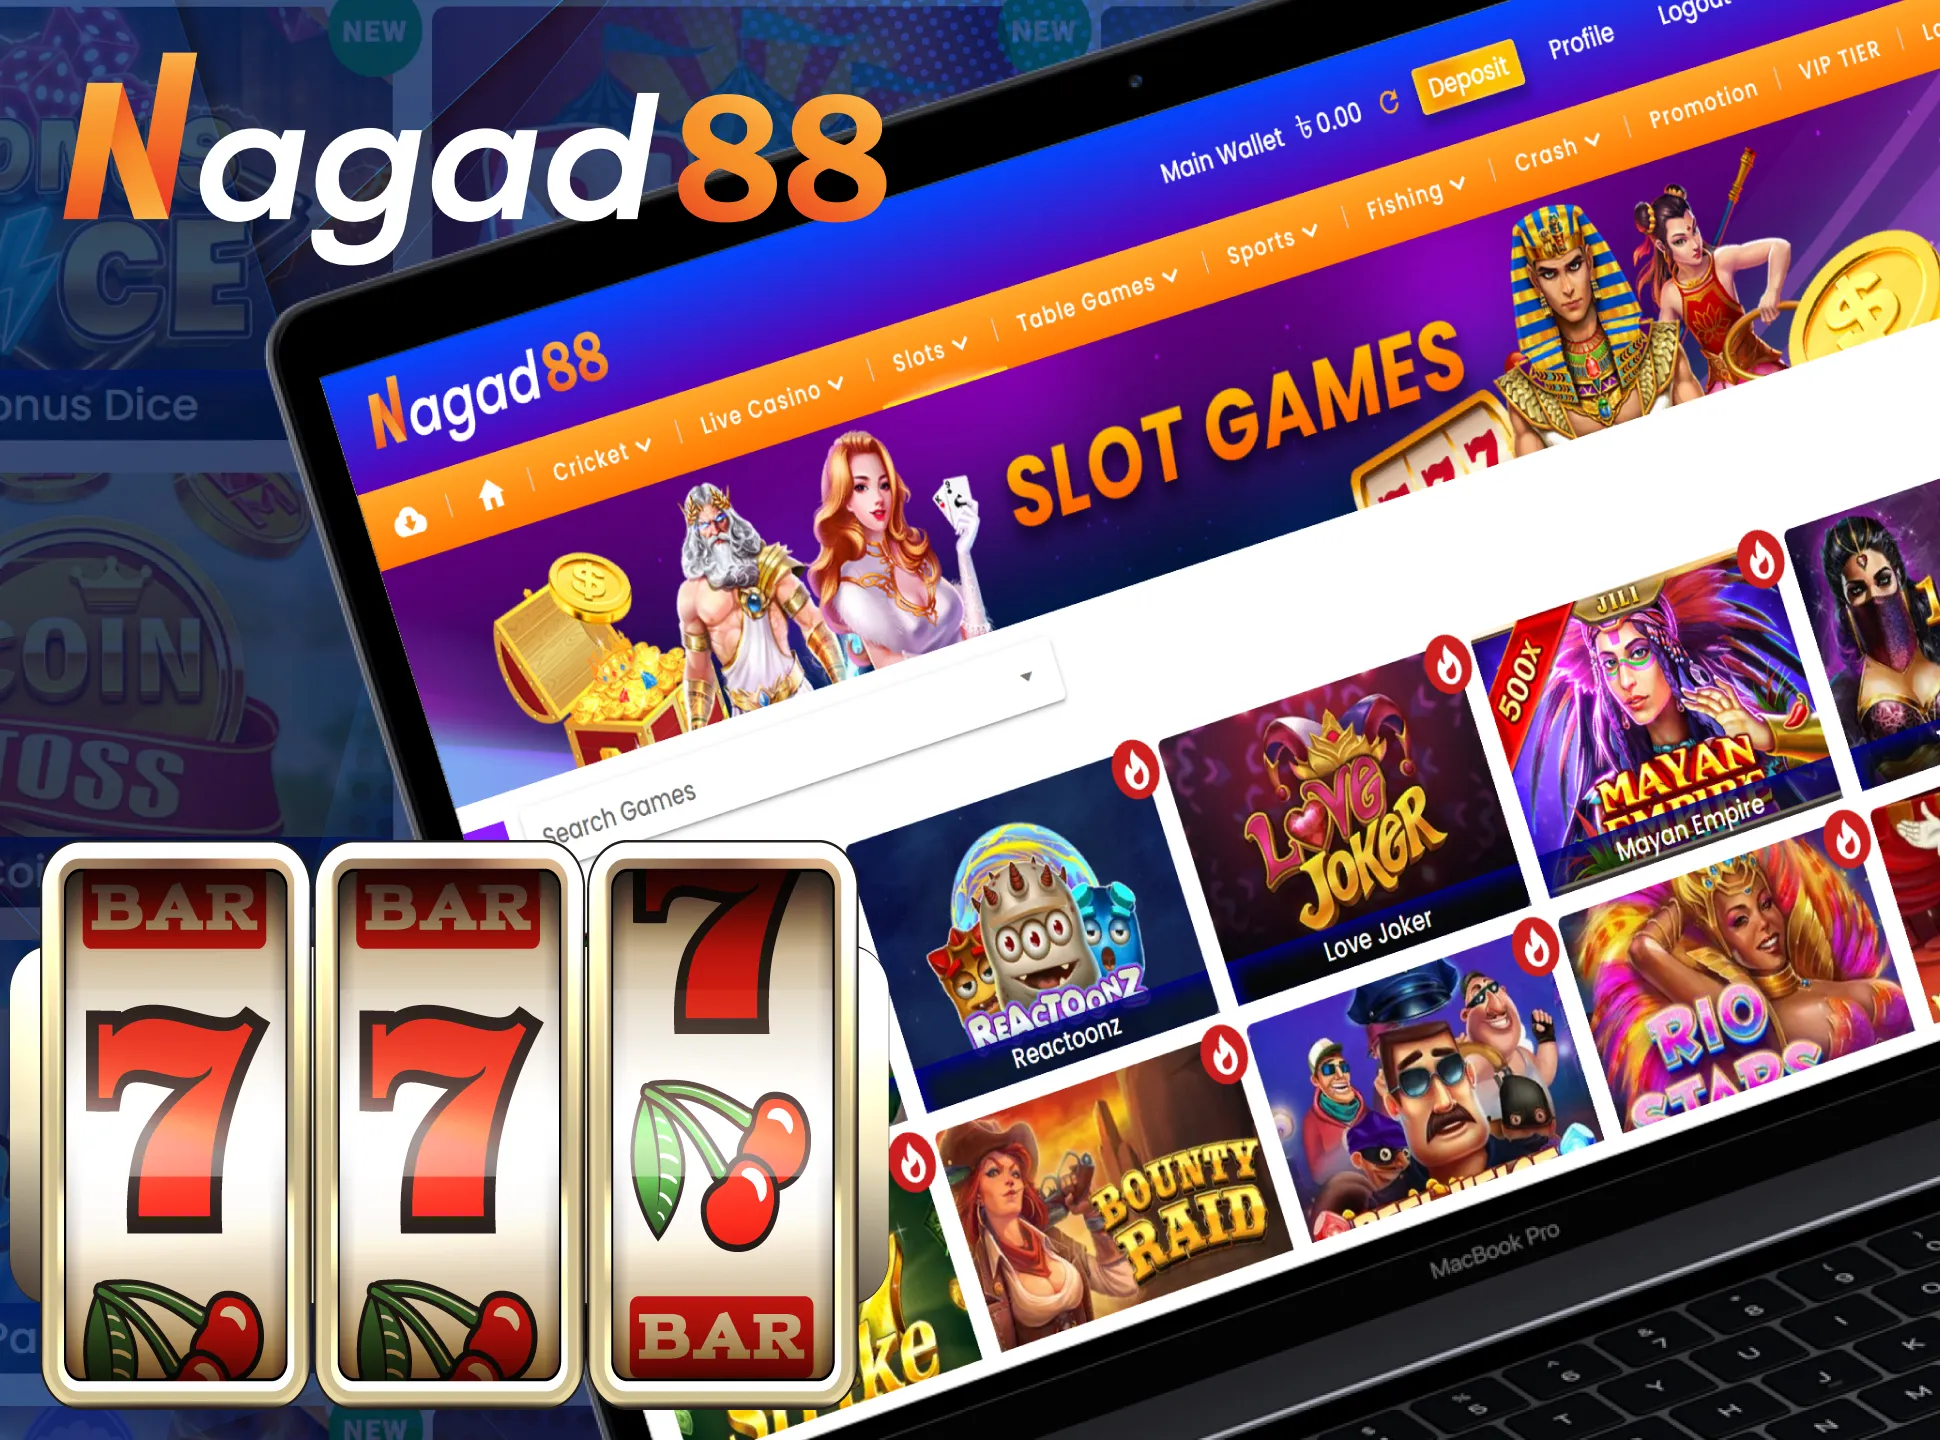 Enjoy slots at Nagad88 Casino.